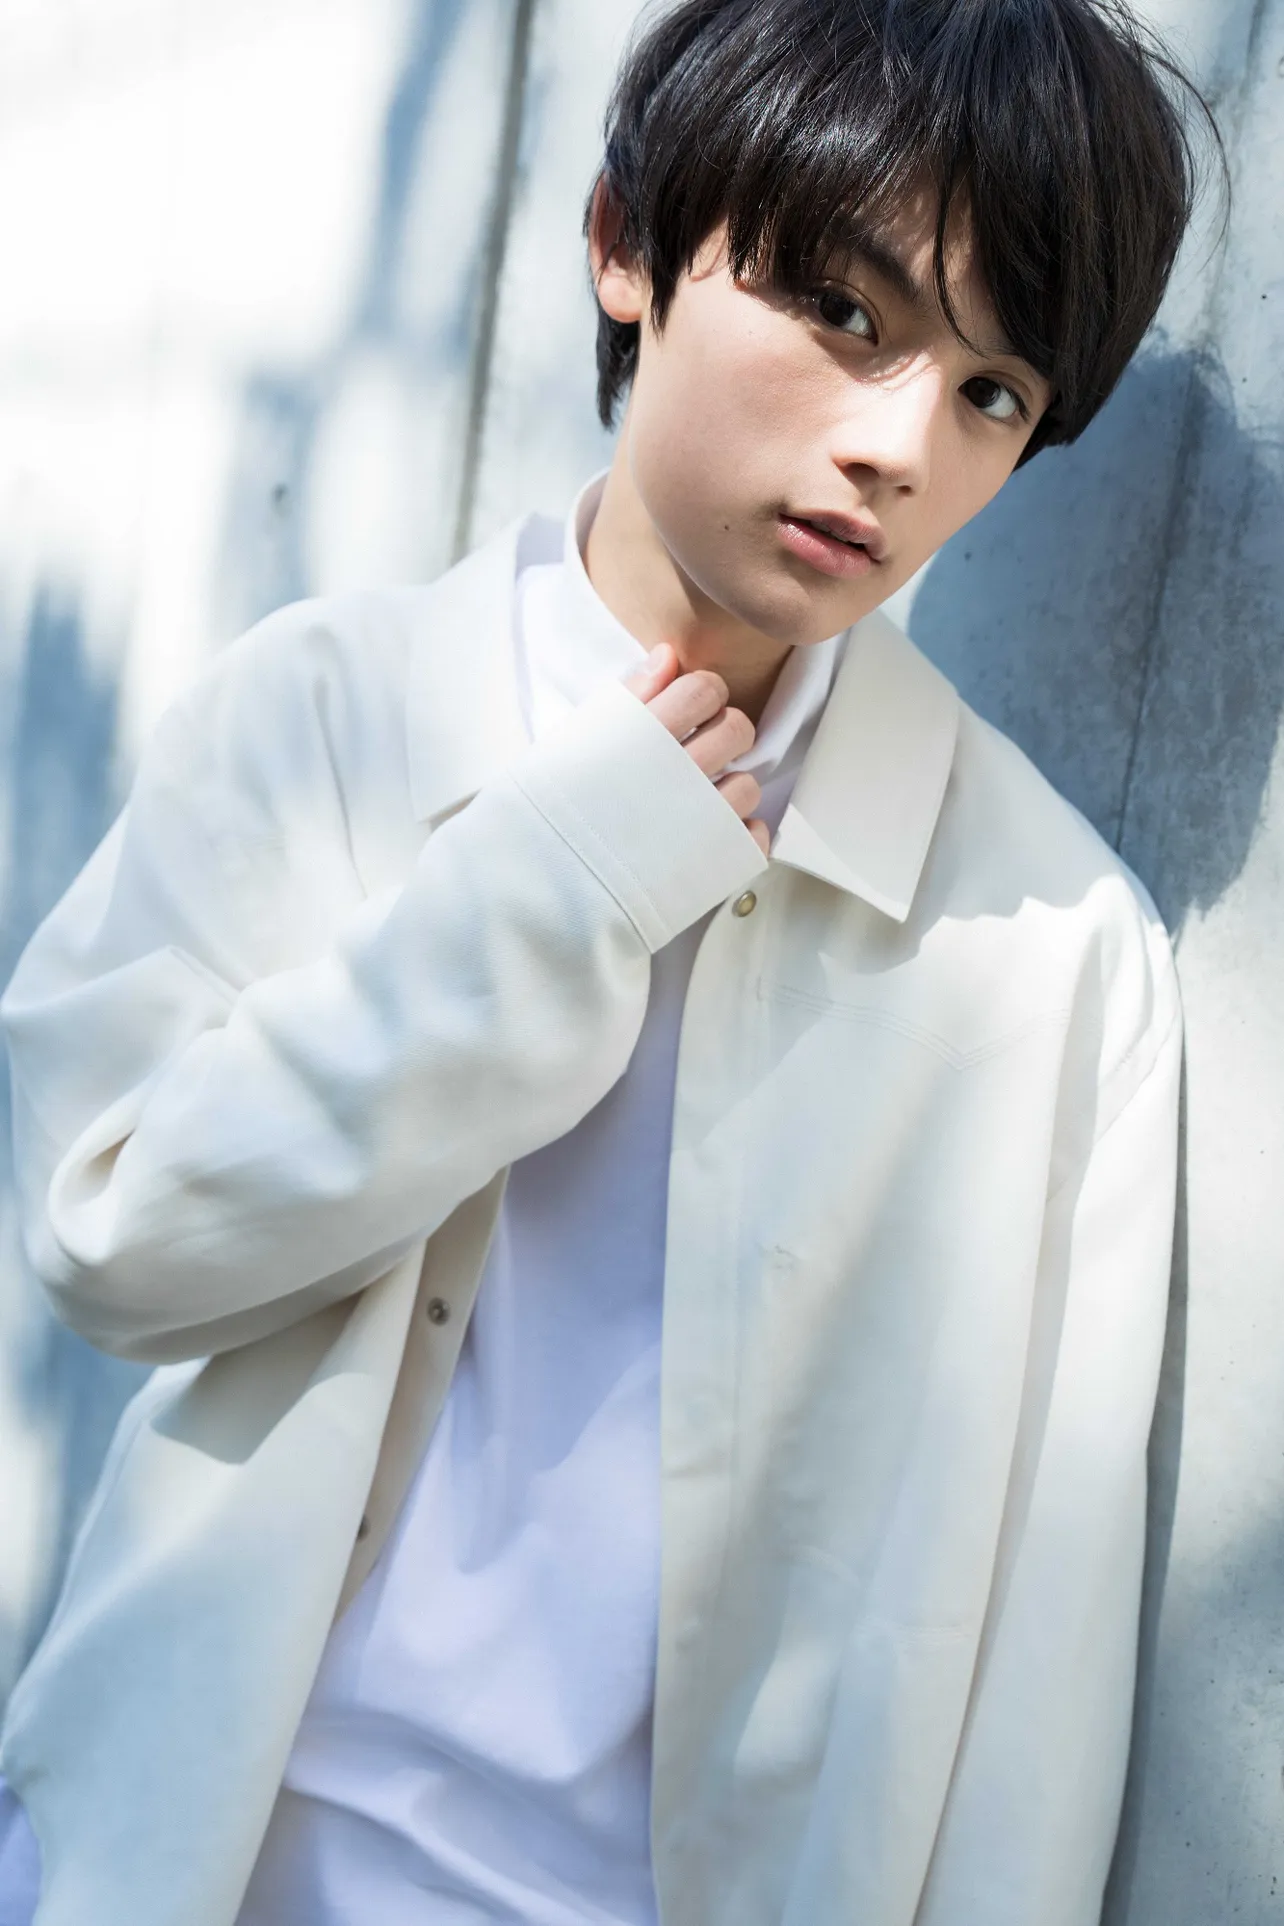 ドラマ「中3、冬、逃亡中。」(dTV チャンネル)で、中学生3年生の少年・翔太を演じている藤原大祐